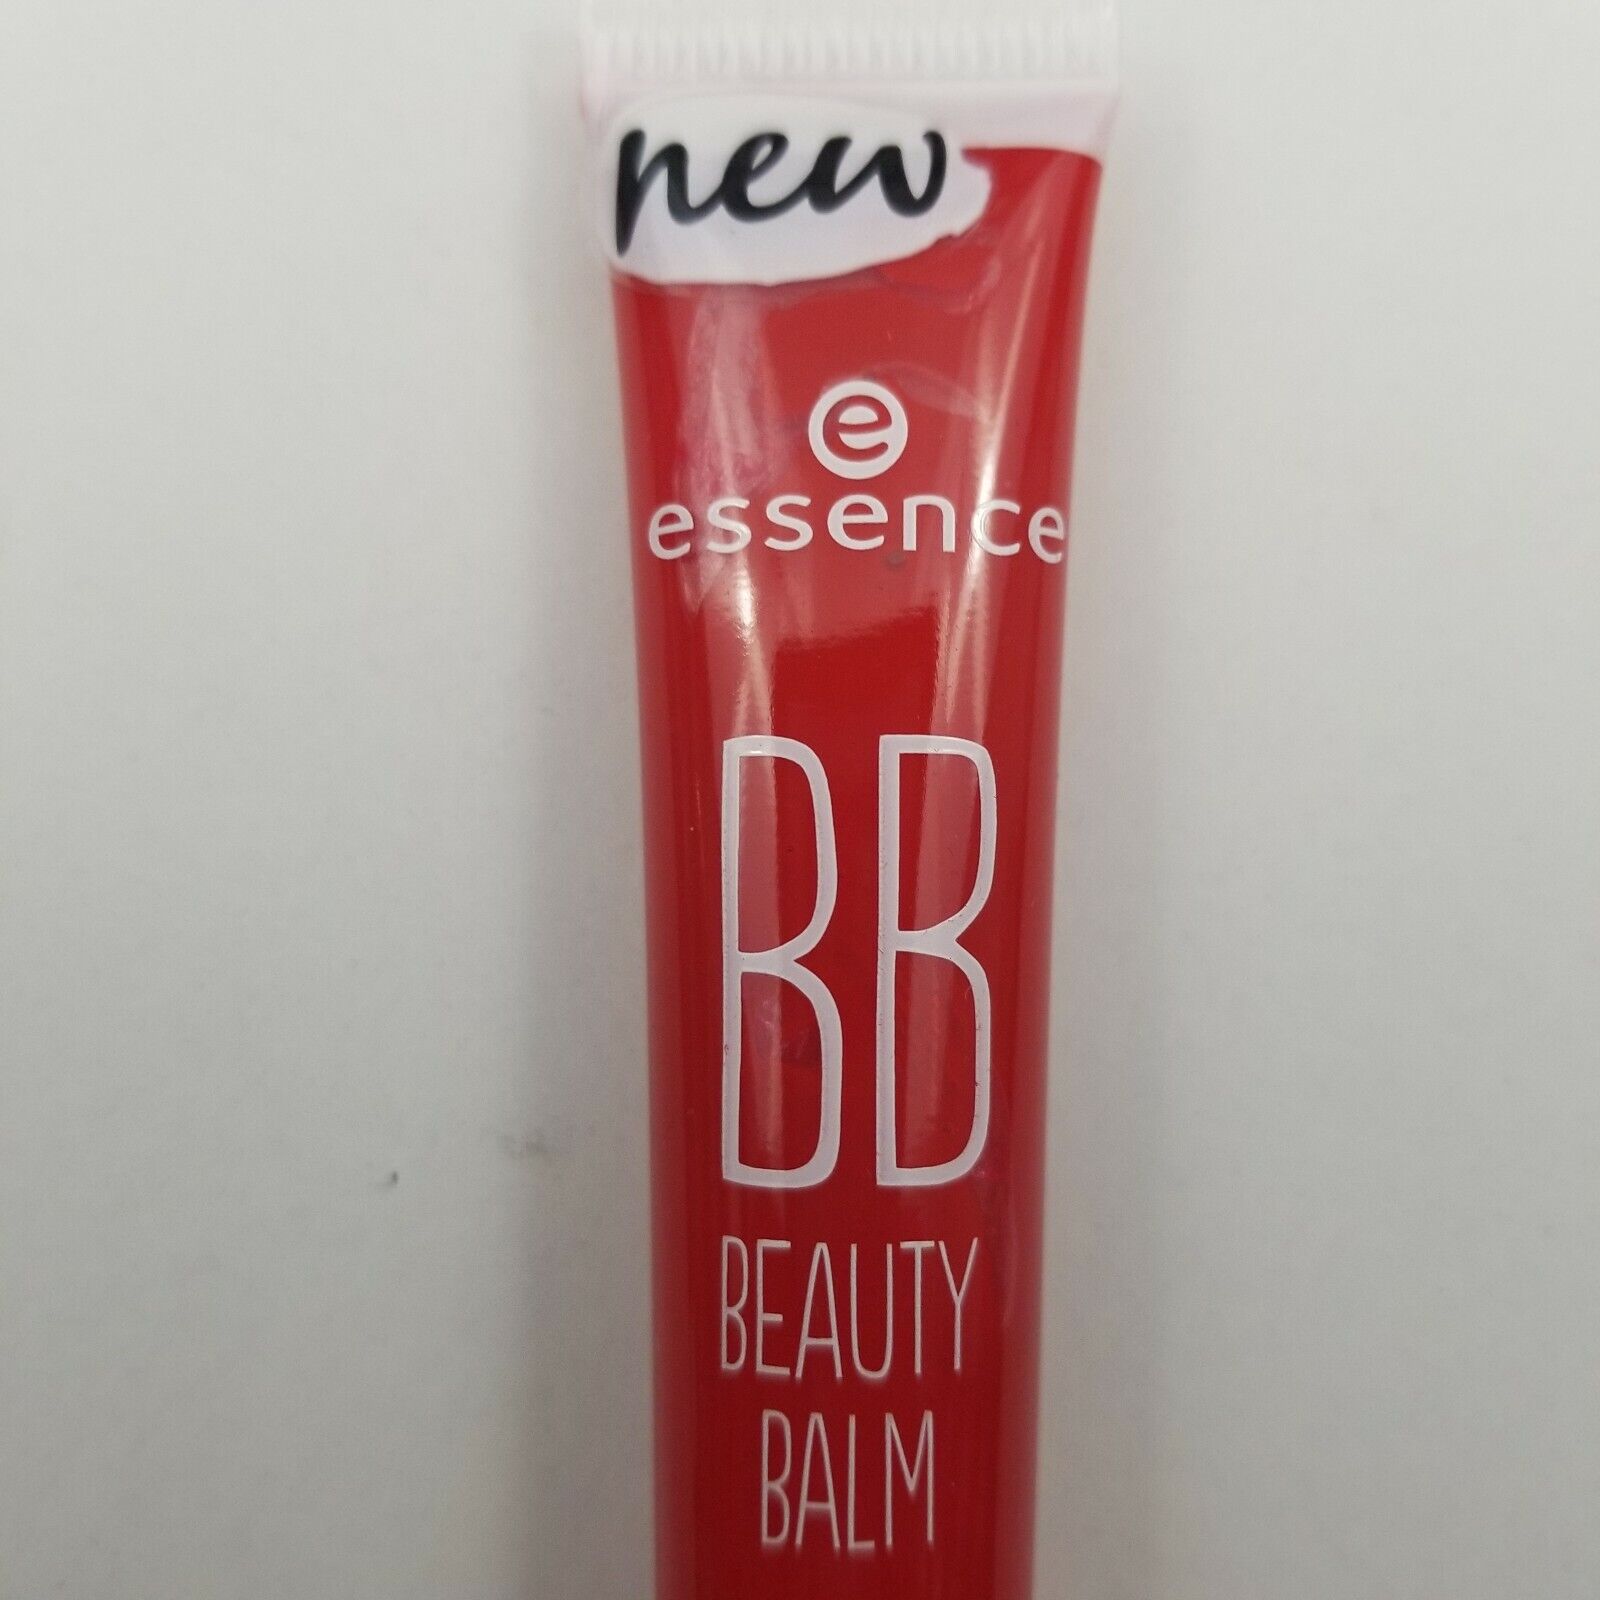 3X Essence BB Beauty Balm Lip Gloss with Shea Butter 0.4 oz 05 Heartbreaker New essence 05 Heartbreaker - фотография #3